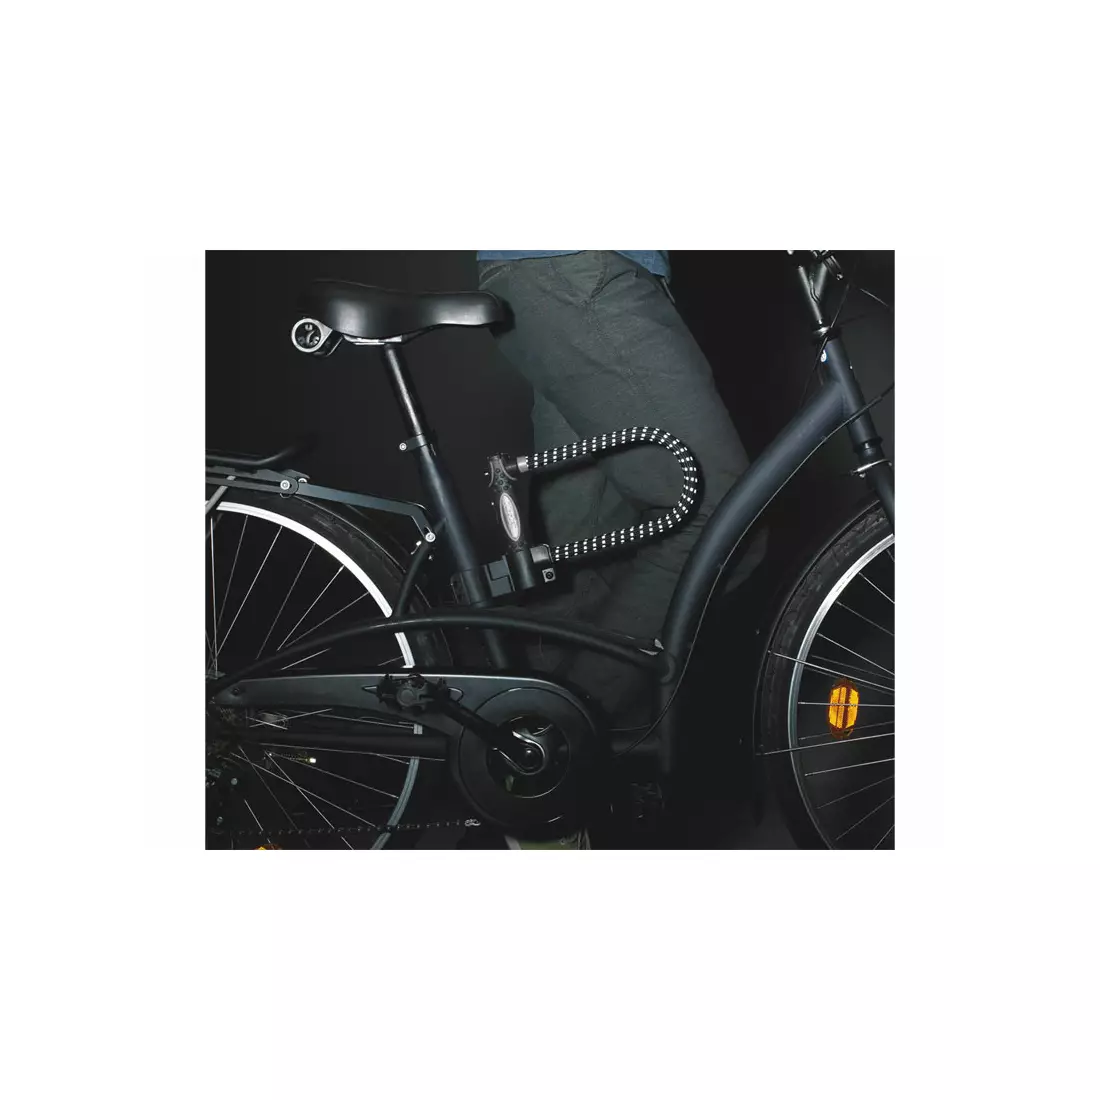 MASTERLOCK 8195LW U-LOCK kerékpárzár 13mm 110mm 280mm Gumi borítású KULCS fényvisszaverő fekete MRL-8195EURDPROLWREF SS16